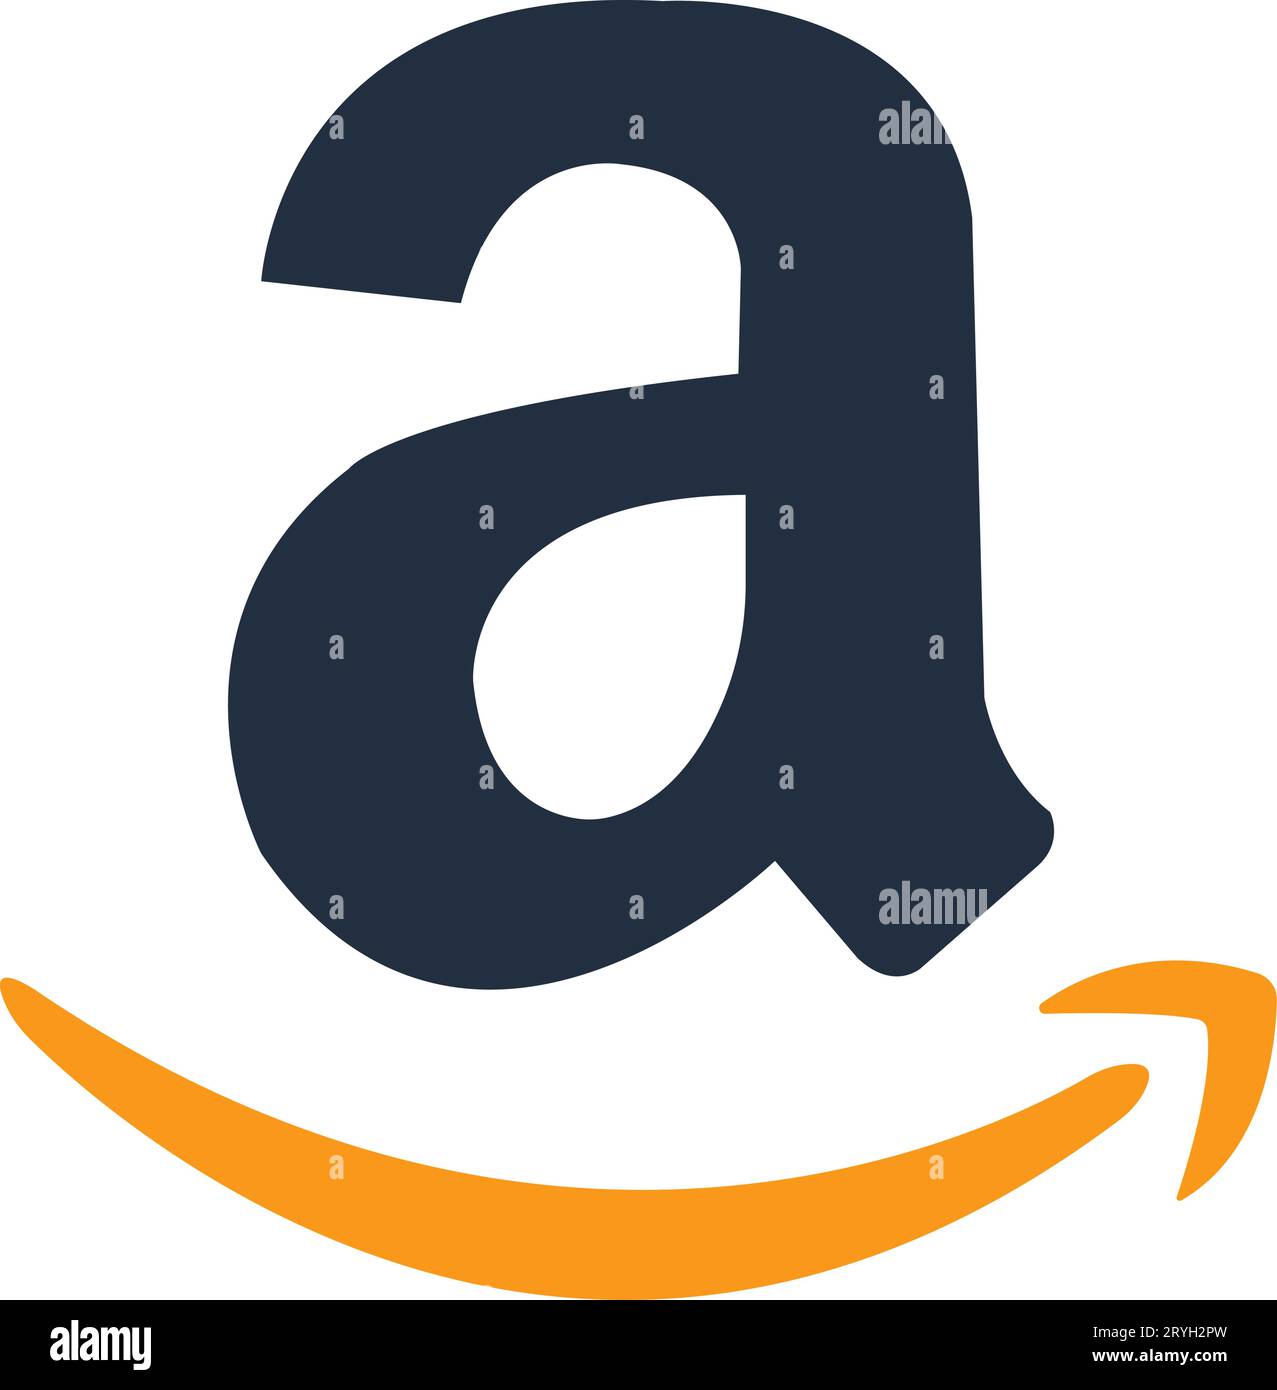 Icône du logo Amazon. Enseigne eBay ou logotype. Plate-forme d'achat eBay ou e-commerce. Vecteur Illustration de Vecteur